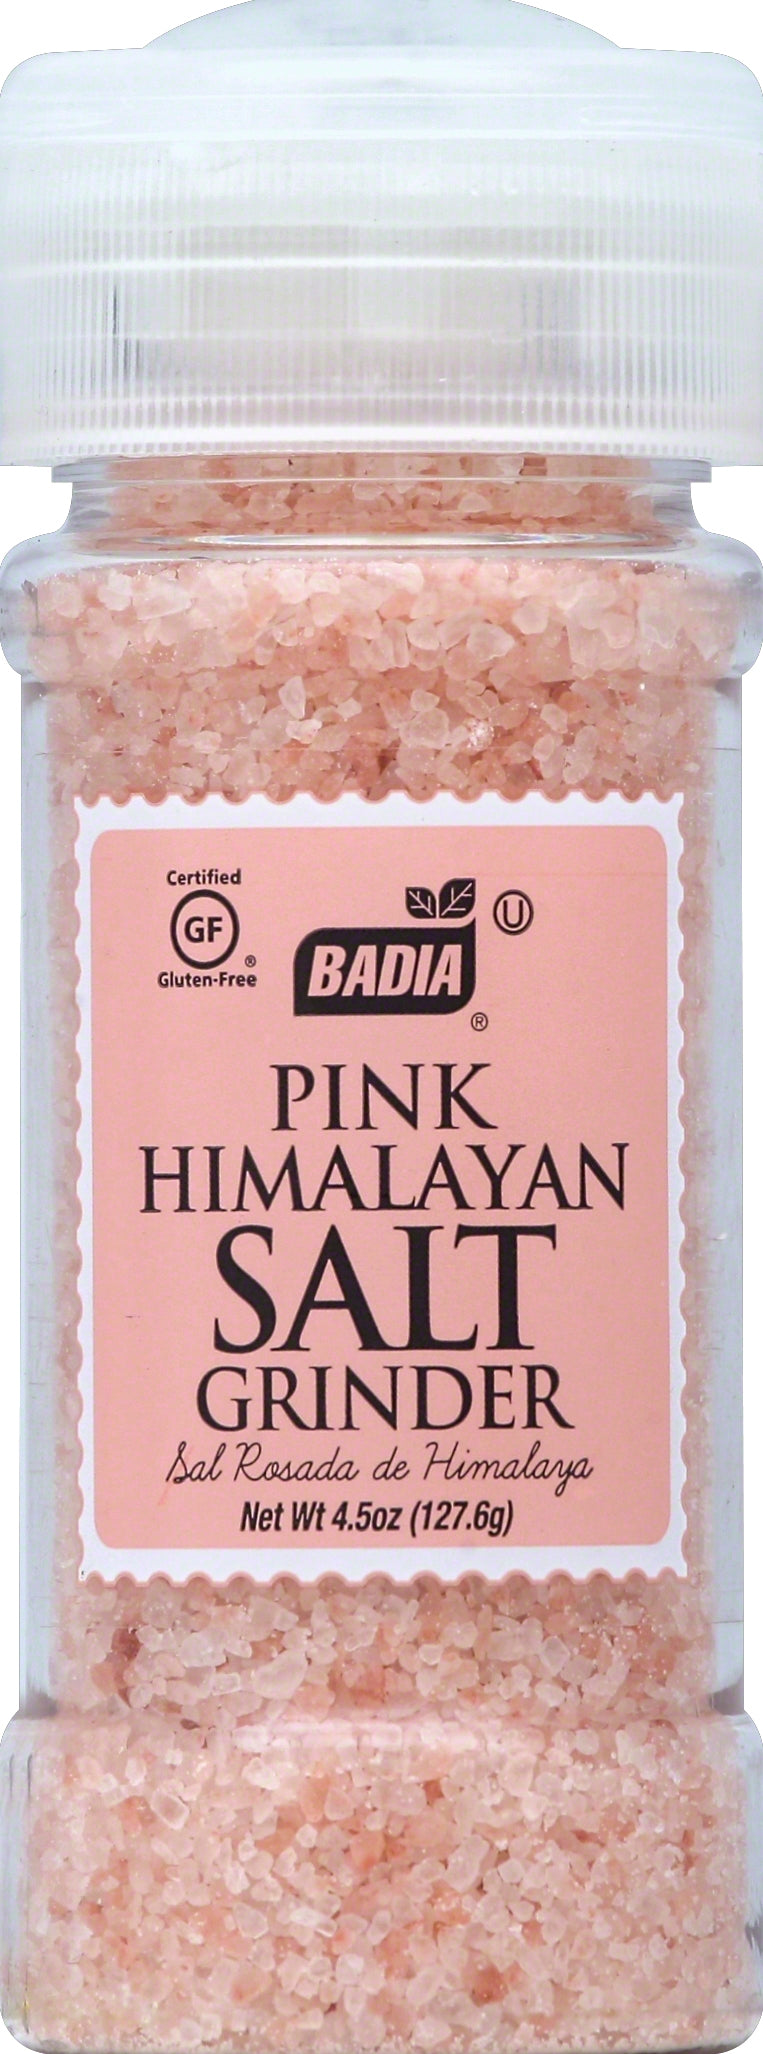 Badia Pink Himalayan Salt 8/4.5 Oz.